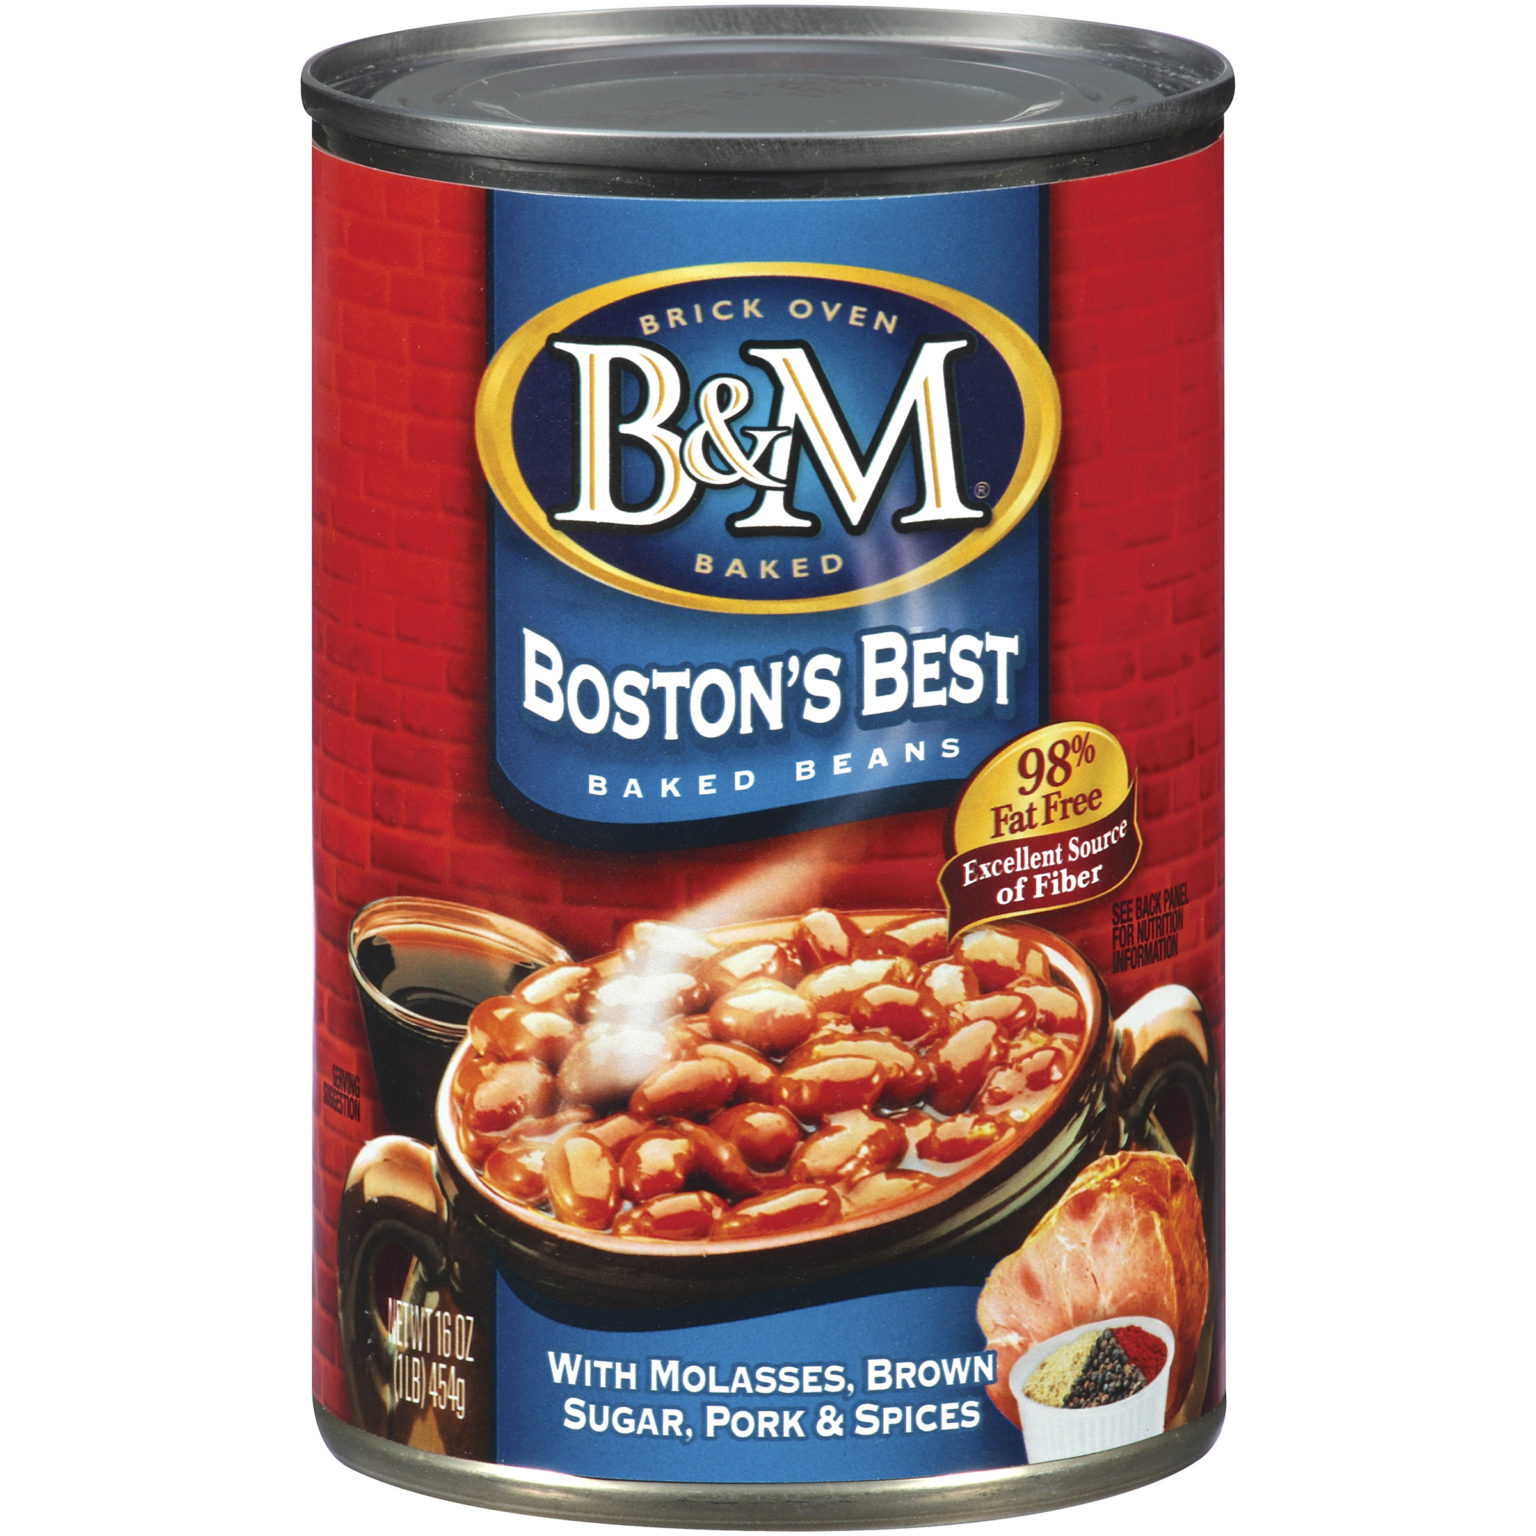 Boston's Best Baked Beans - B&M Beans